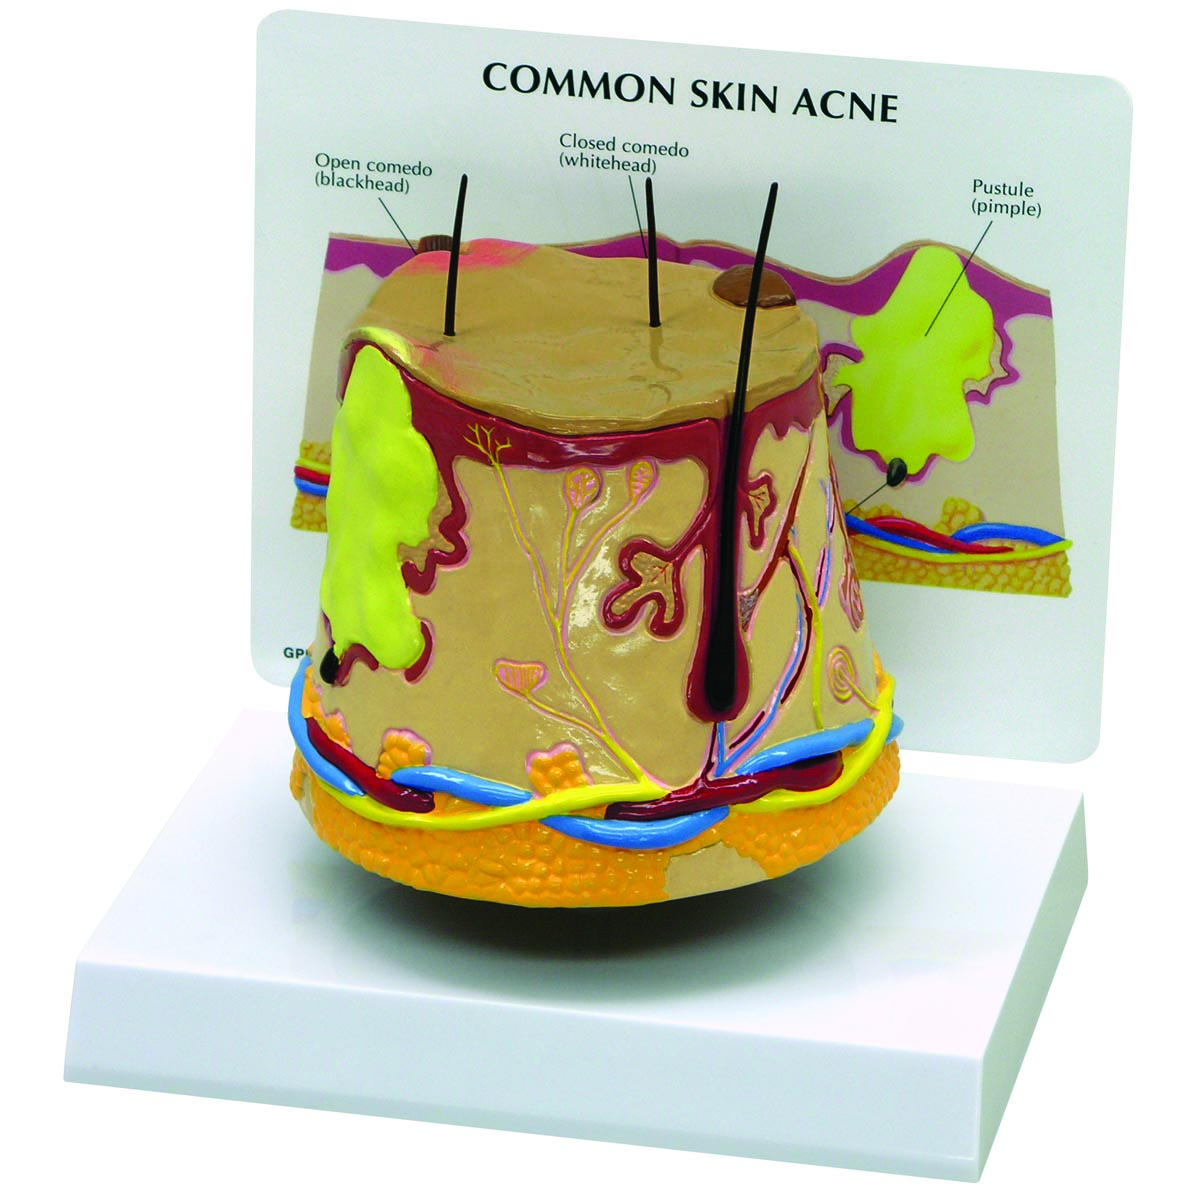 Modell einer Hautakne (überdimensioniert), Bestellnummer 1019567, 3750, GPI Anatomicals